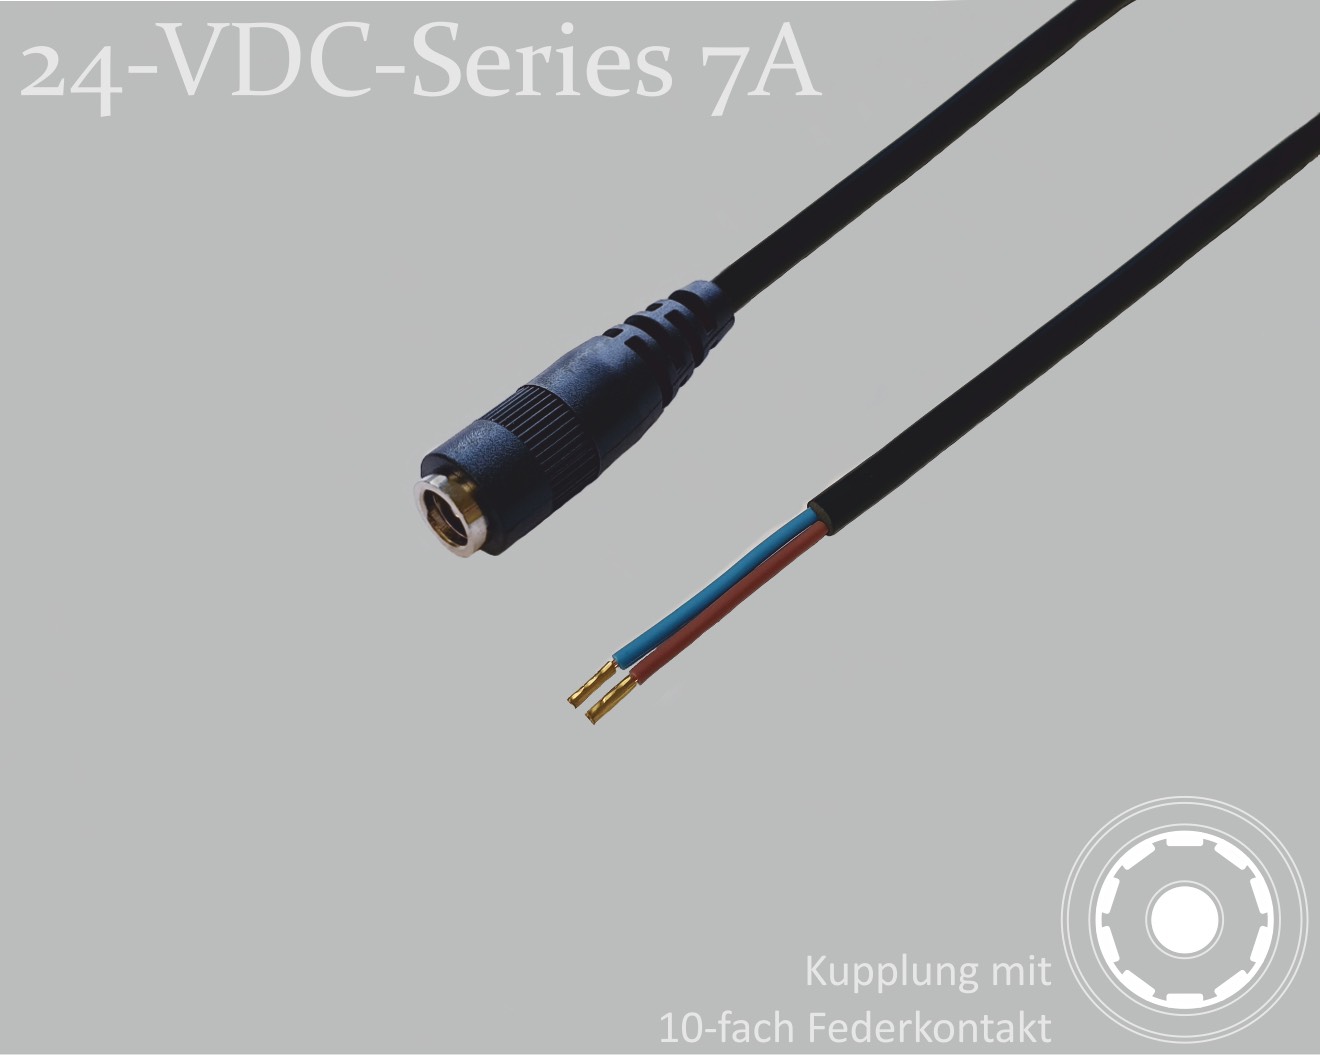 24-VDC-Series 7A, DC-Anschlusskabel, DC-Kupplung mit 10-Federkontakt 2,1x5,5mm, Rundkabel 2x0,50mm², schwarz, Aderendhülsen, 1,5m